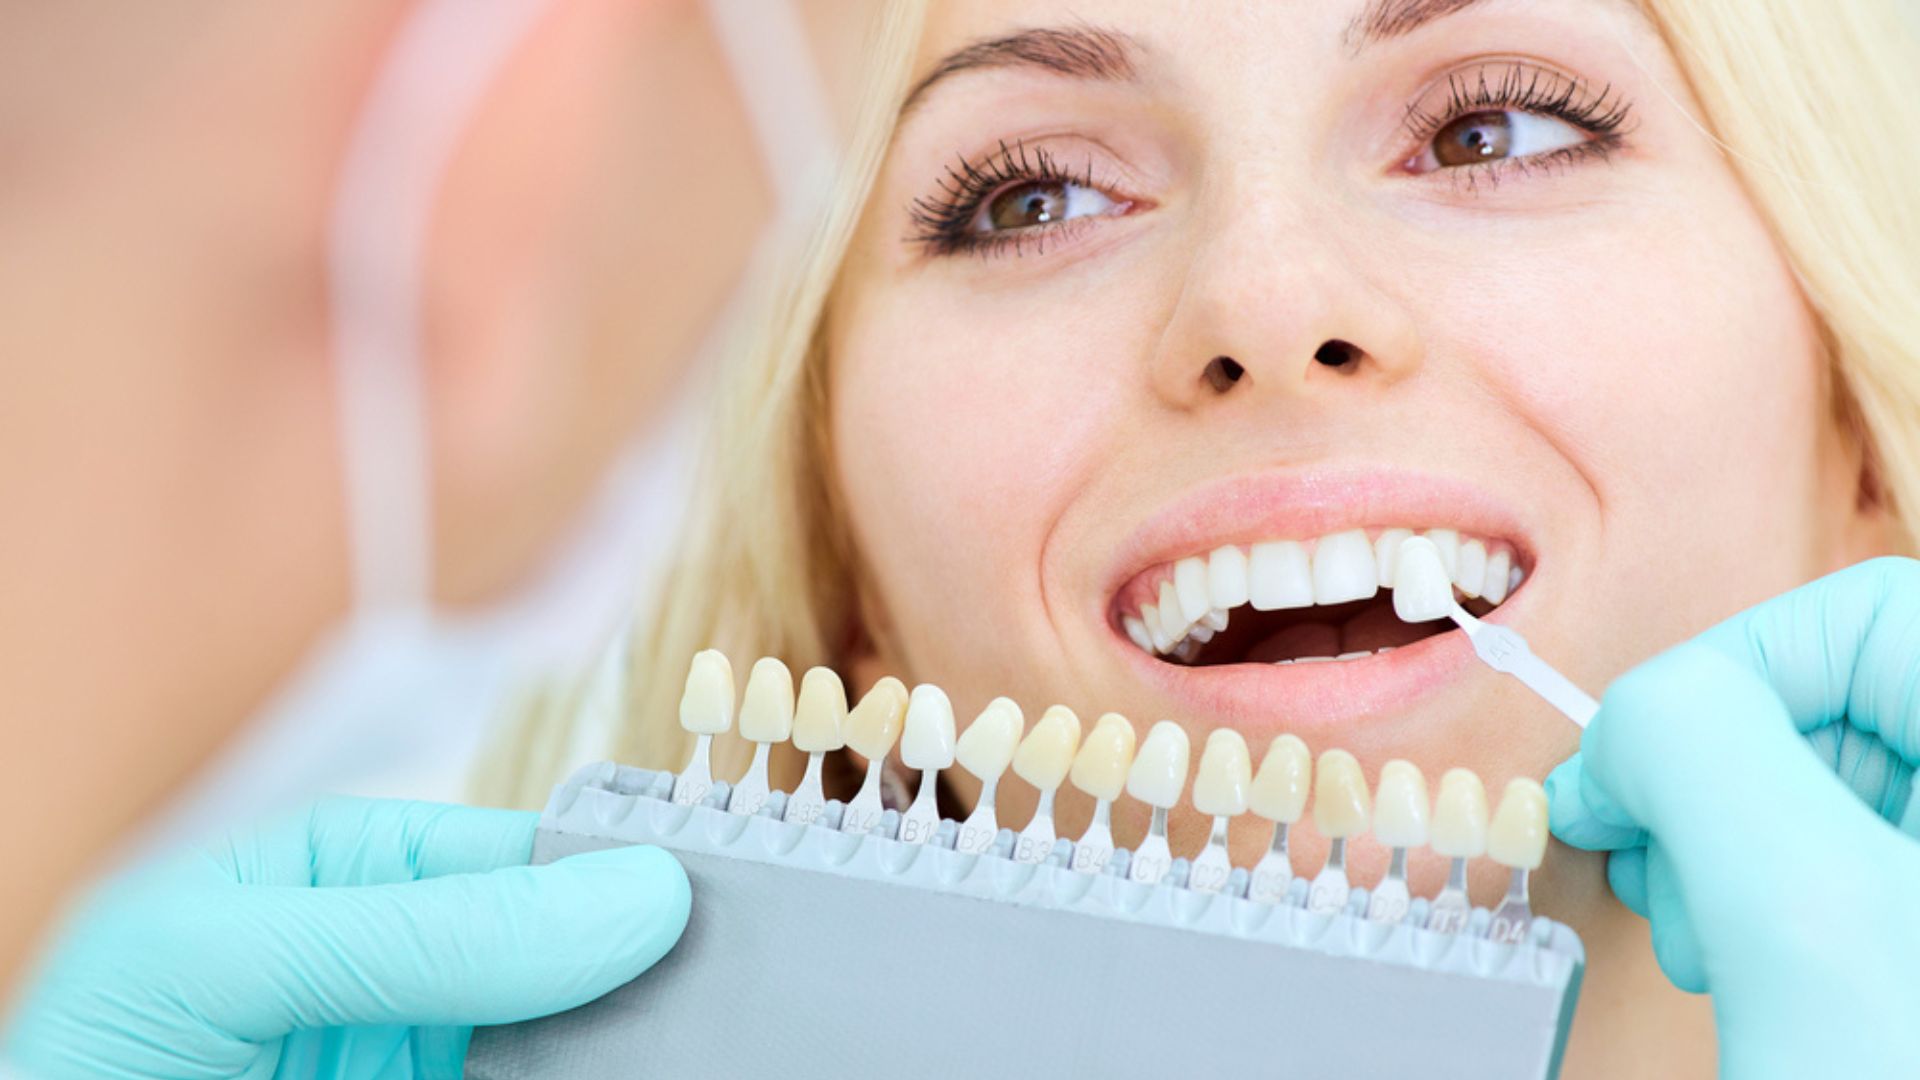 Răng vàng bẩm sinh: Nguyên nhân và cách khắc phục